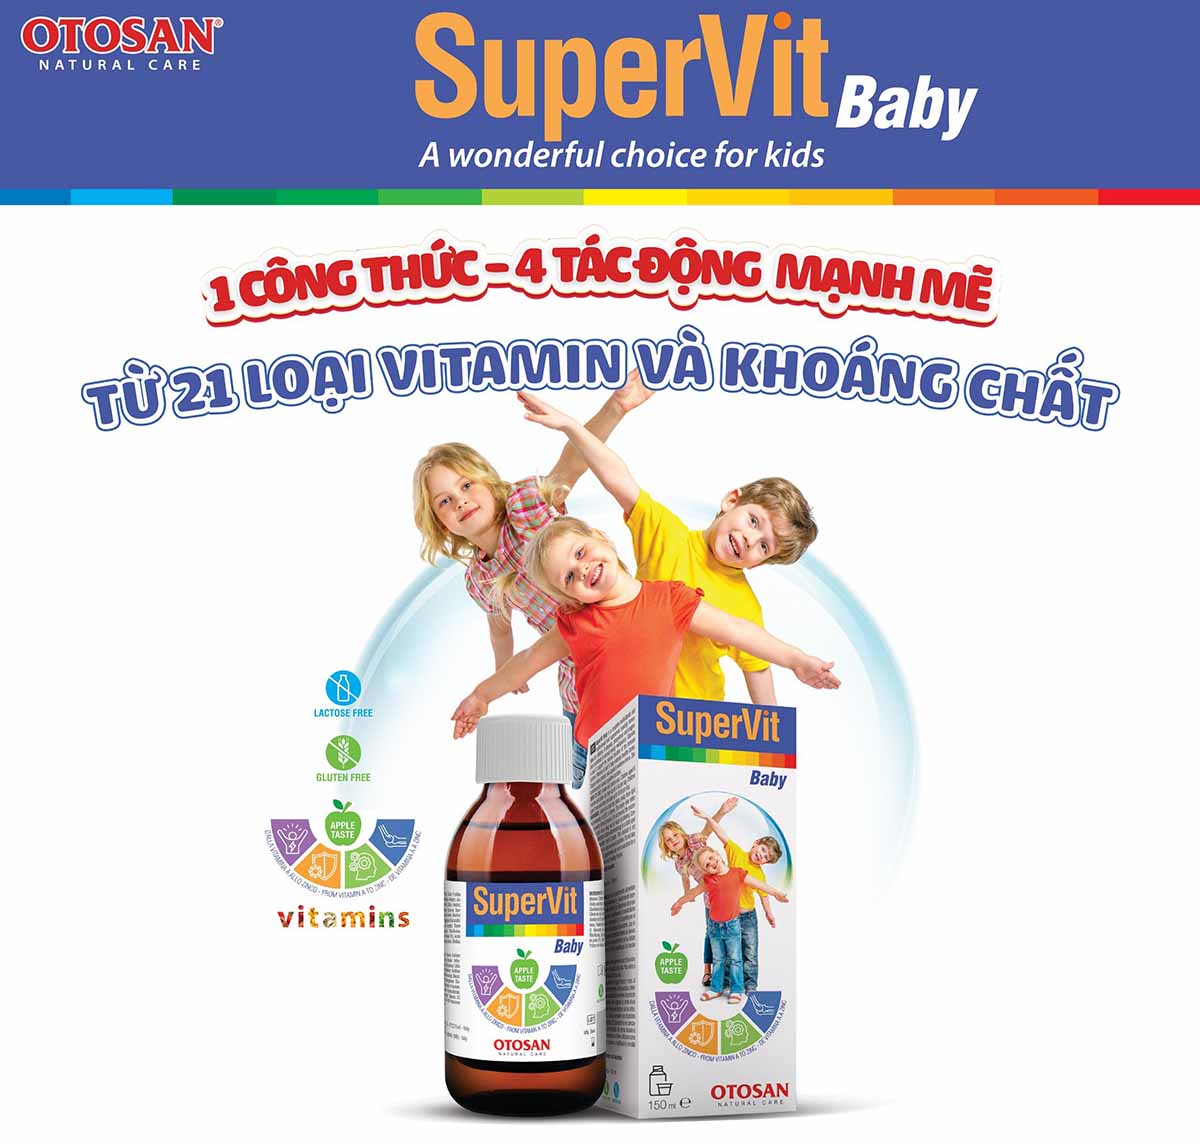 SuperVit Baby giúp tăng cường miễn dịch cho trẻ